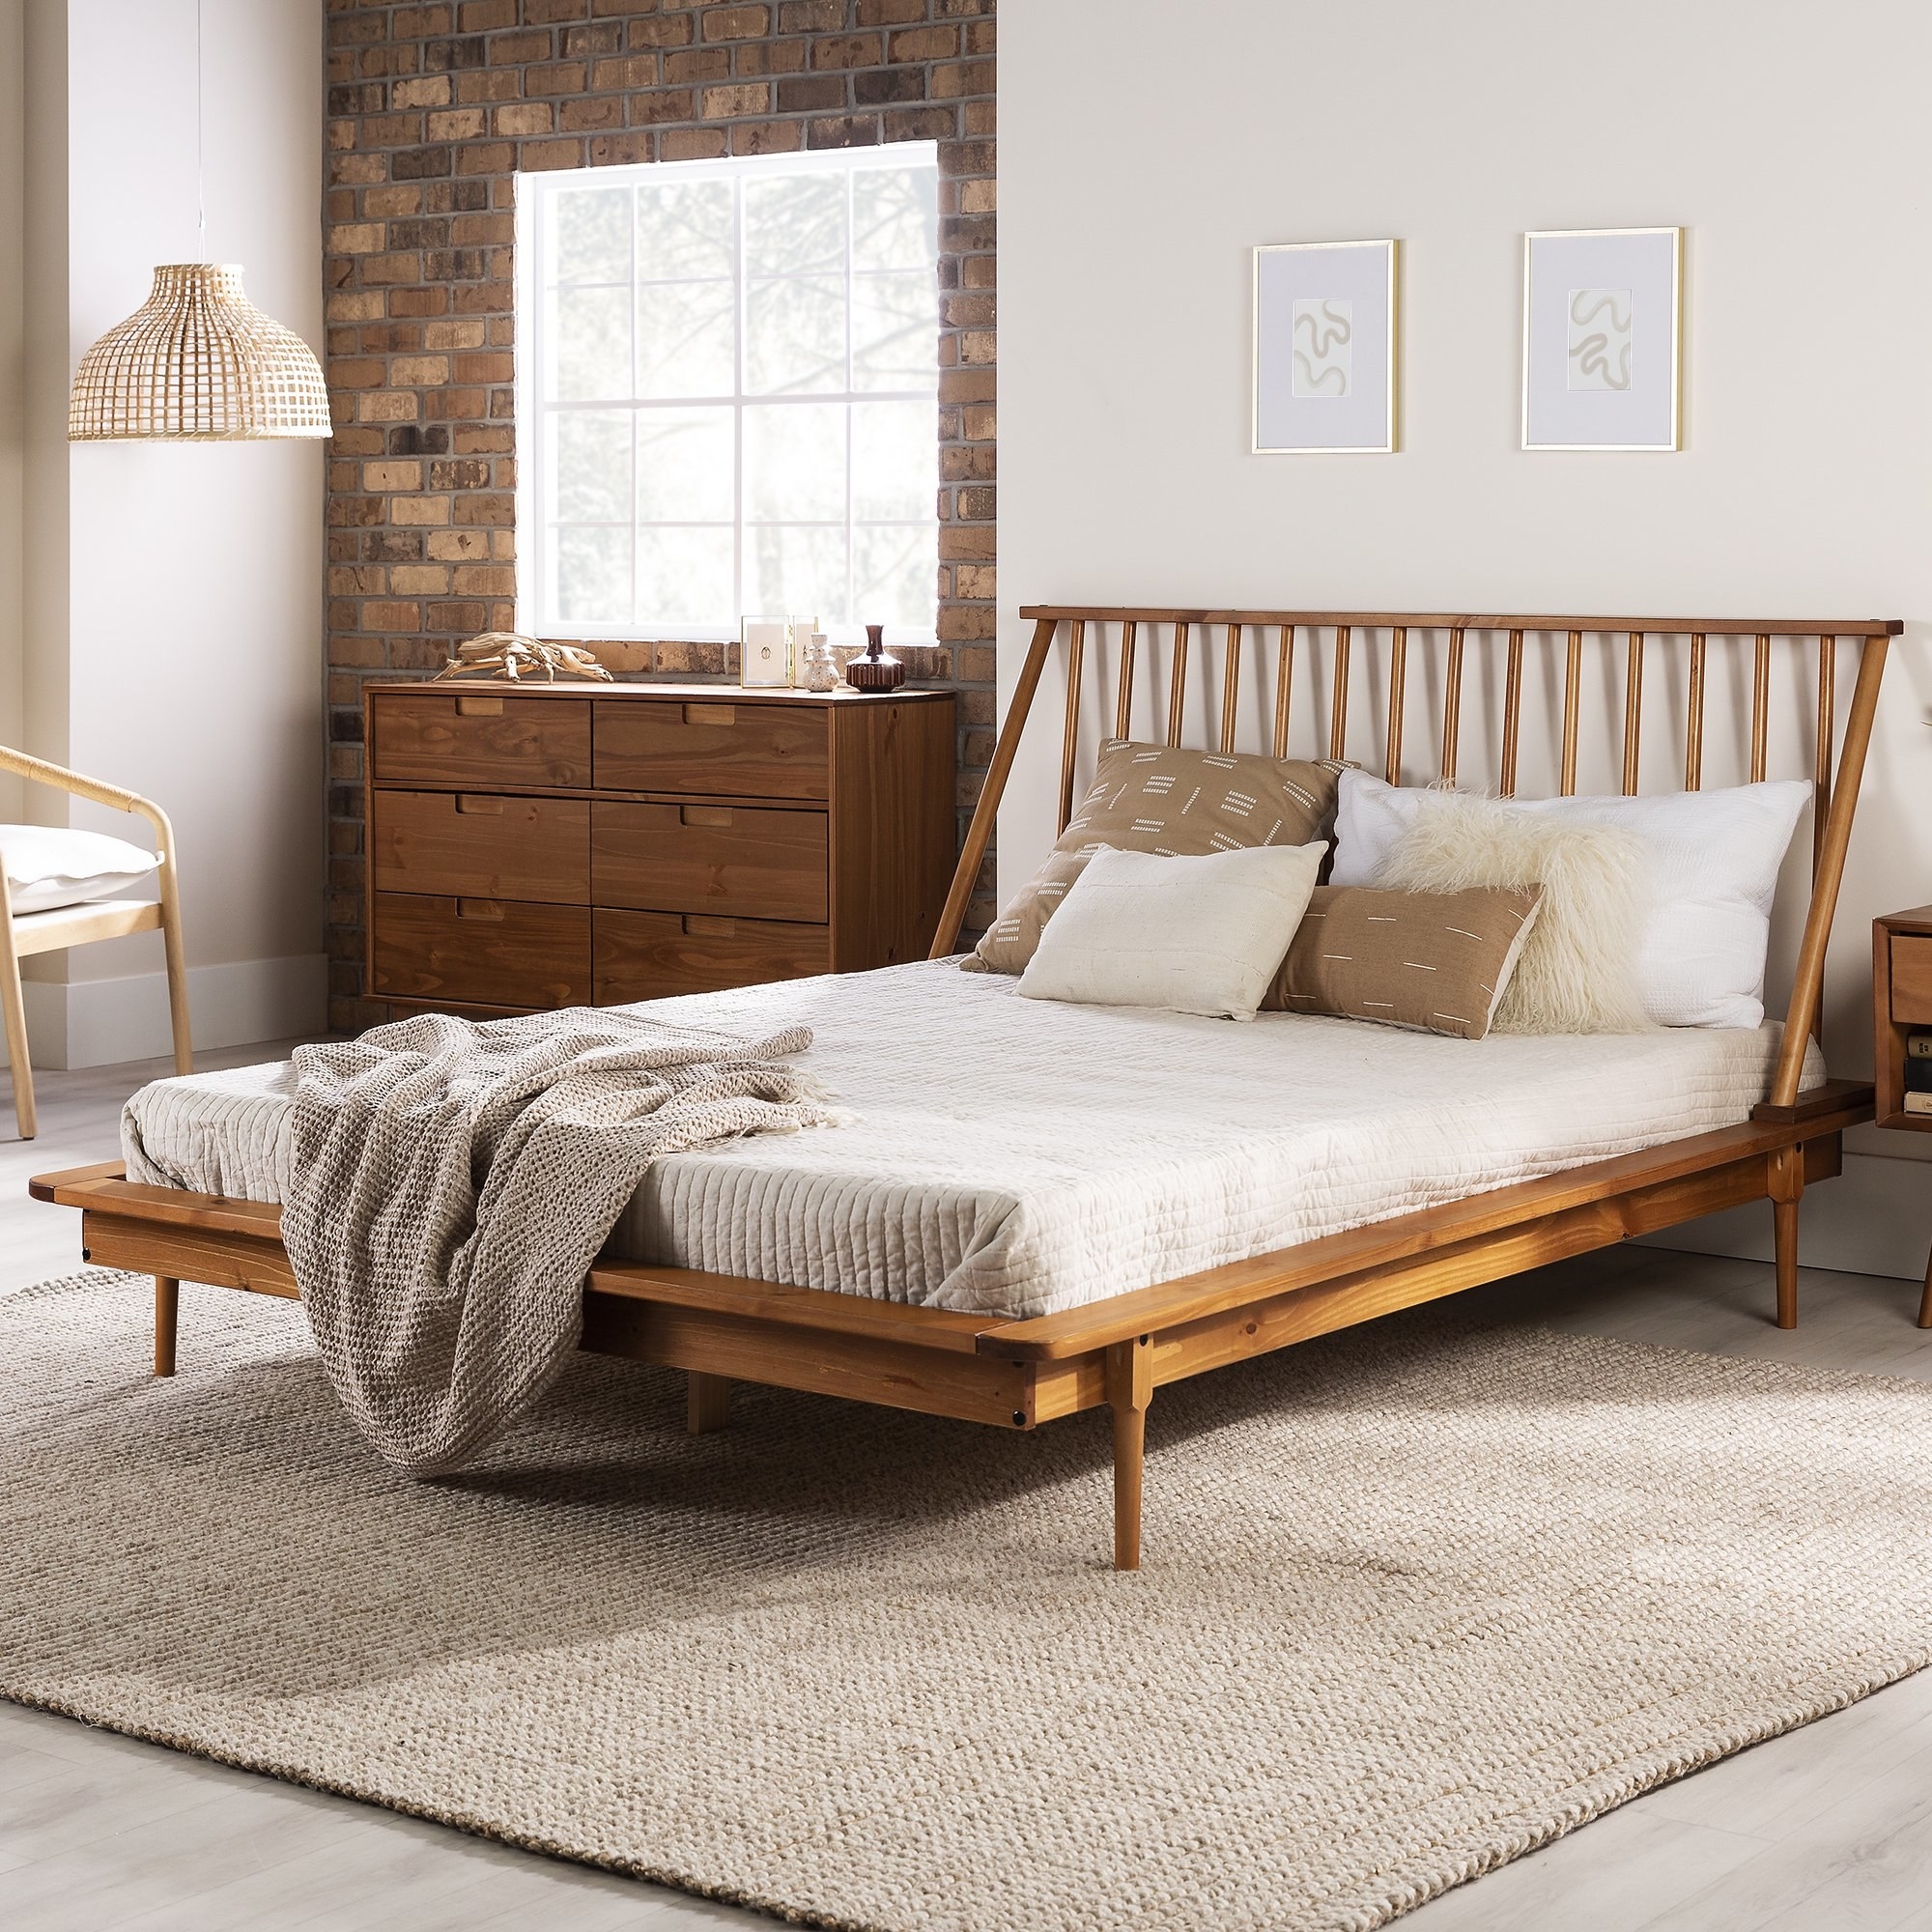 Wood bed frame